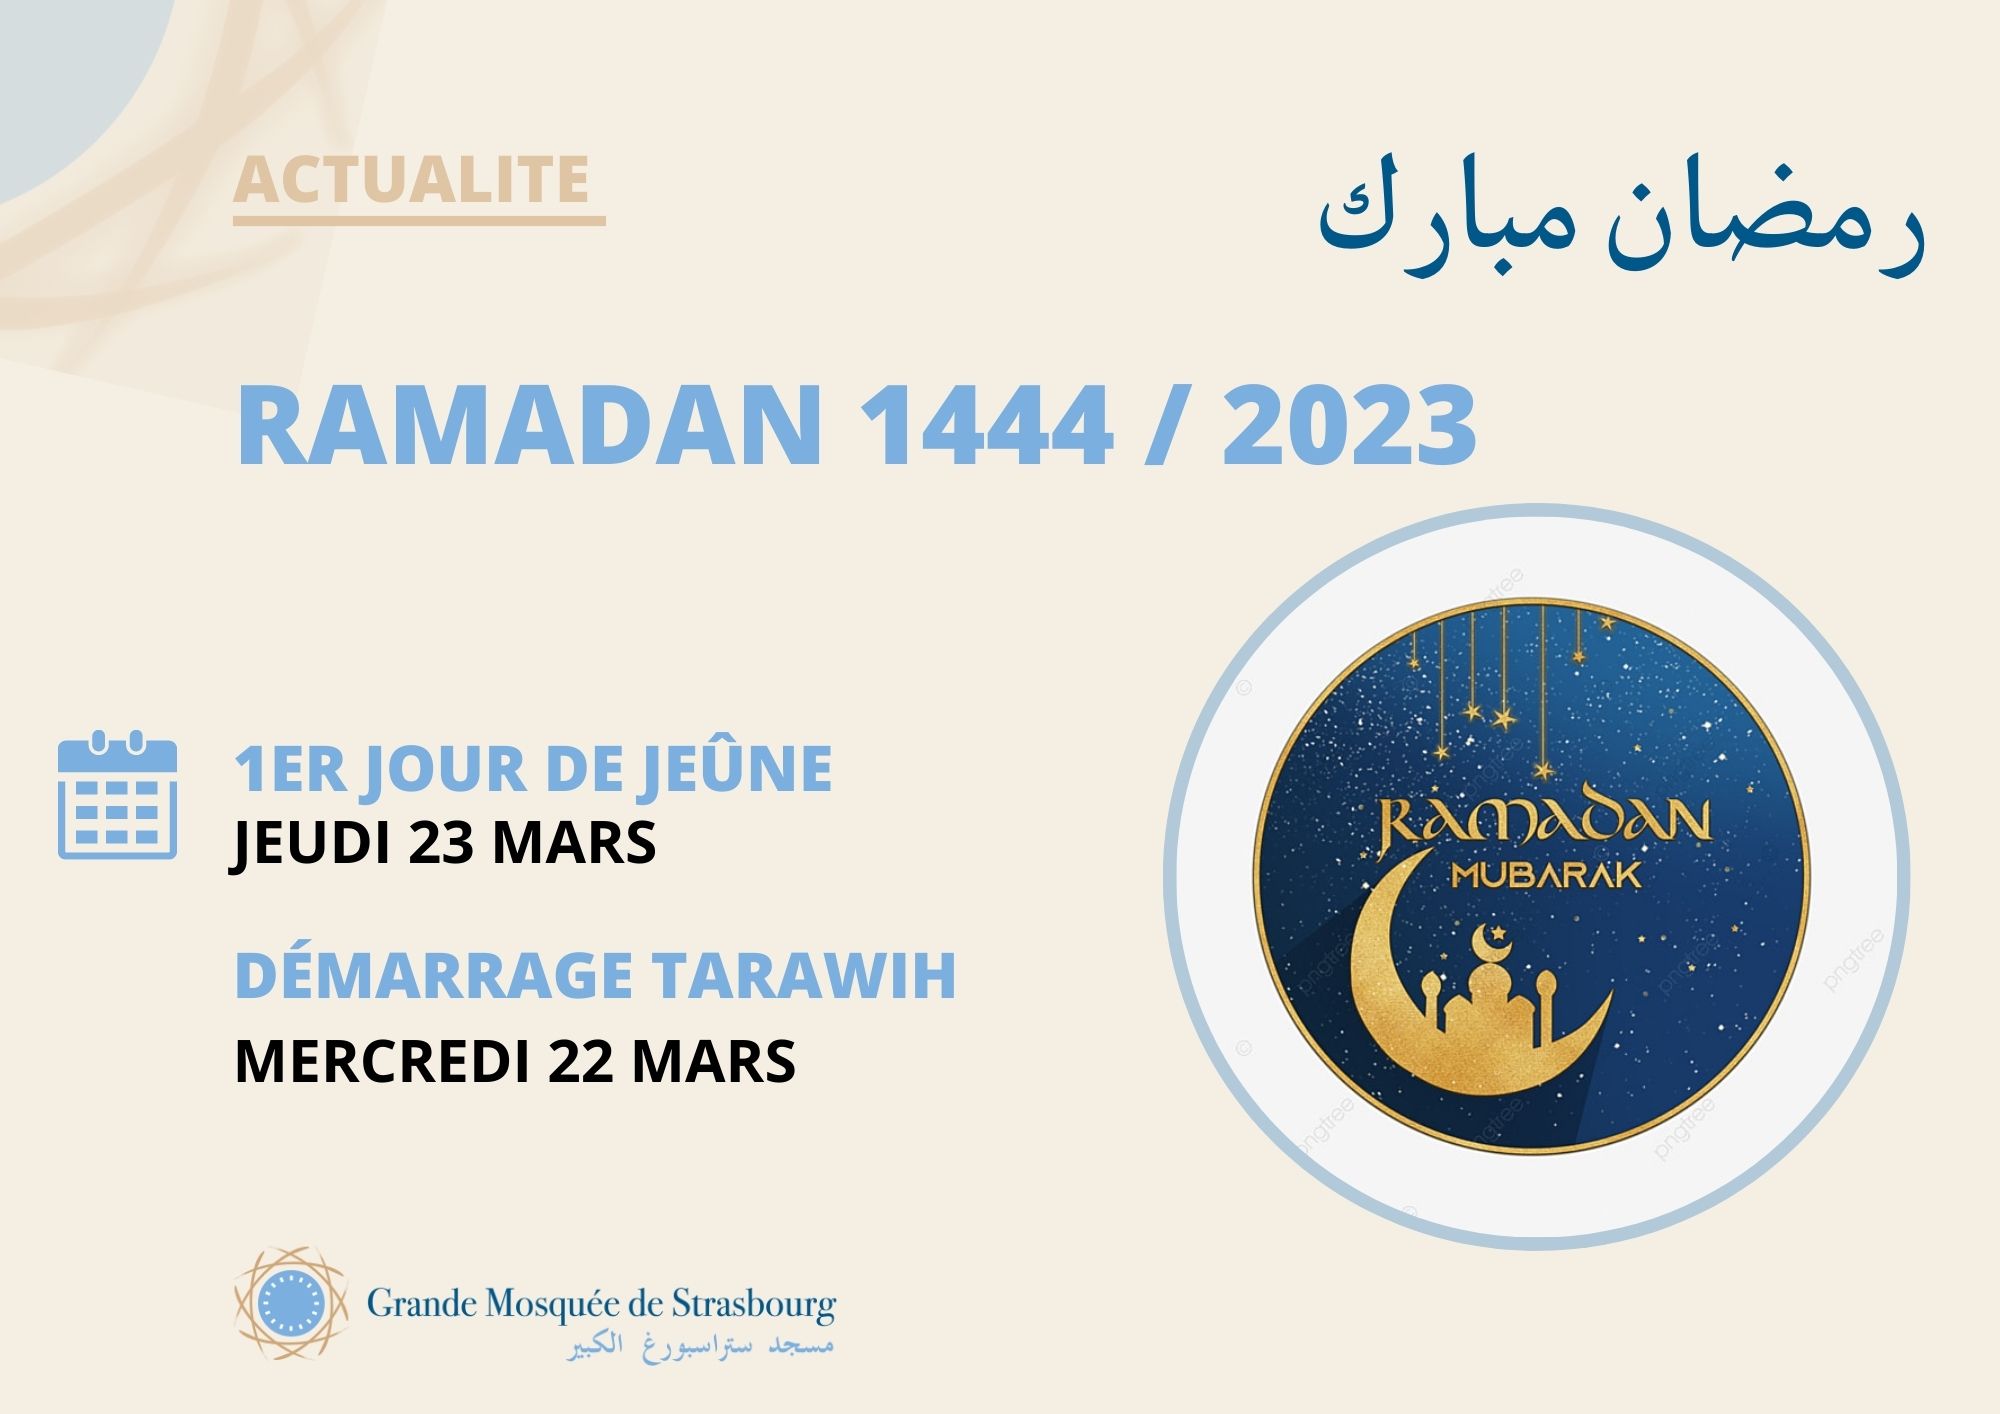 DÉBUT DU RAMADAN 2023 LE JEUDI 23 MARS - Grande Mosquée de Strasbourg